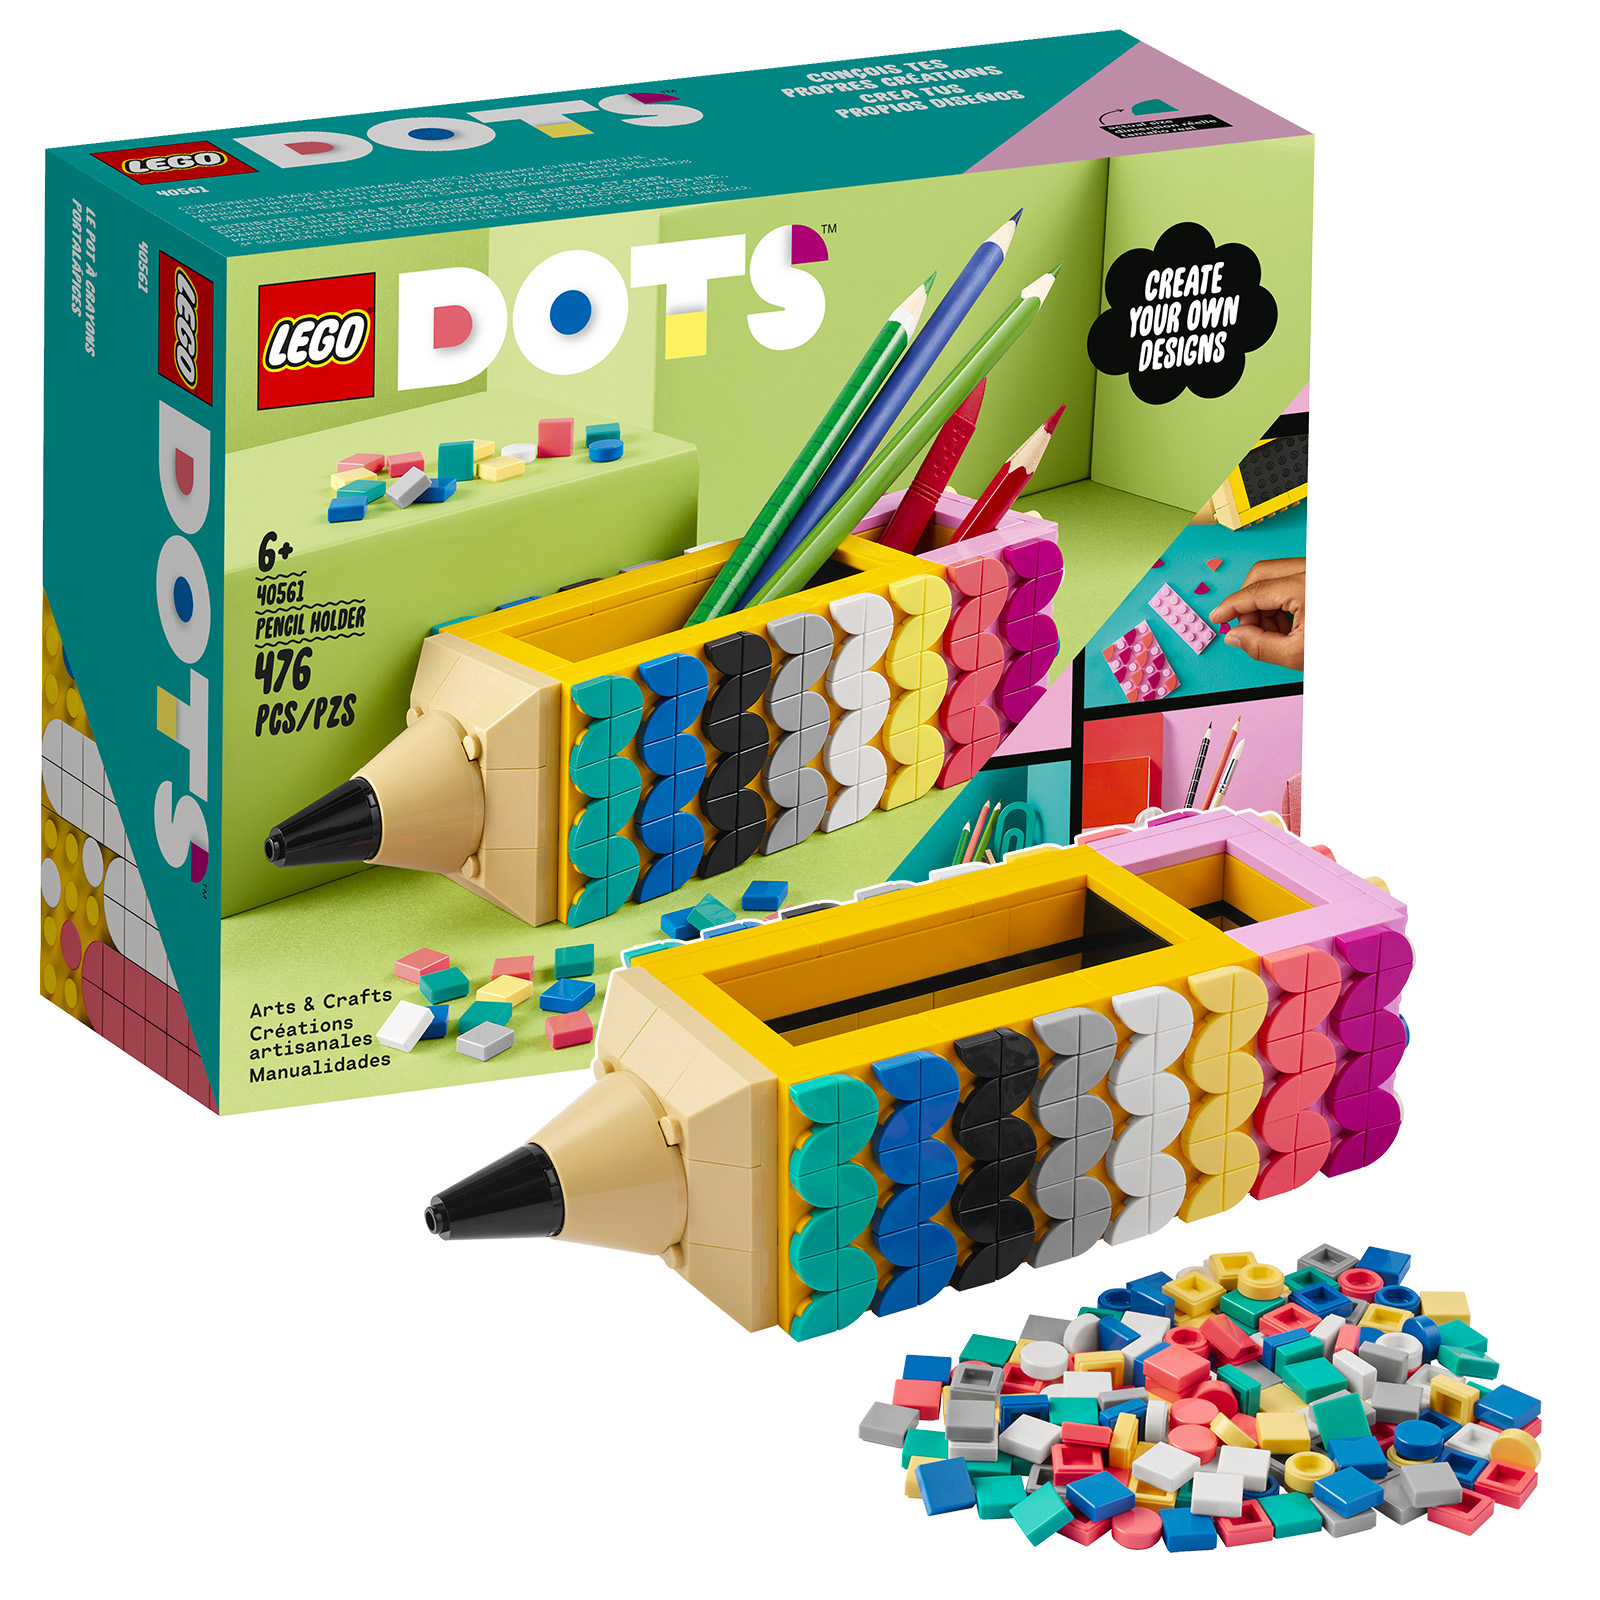 Sul LEGO Shop: set di portamatite DOTS 40561 in omaggio e sacchetto di plastica Super Mario 30509 Albero da frutto Yoshi giallo